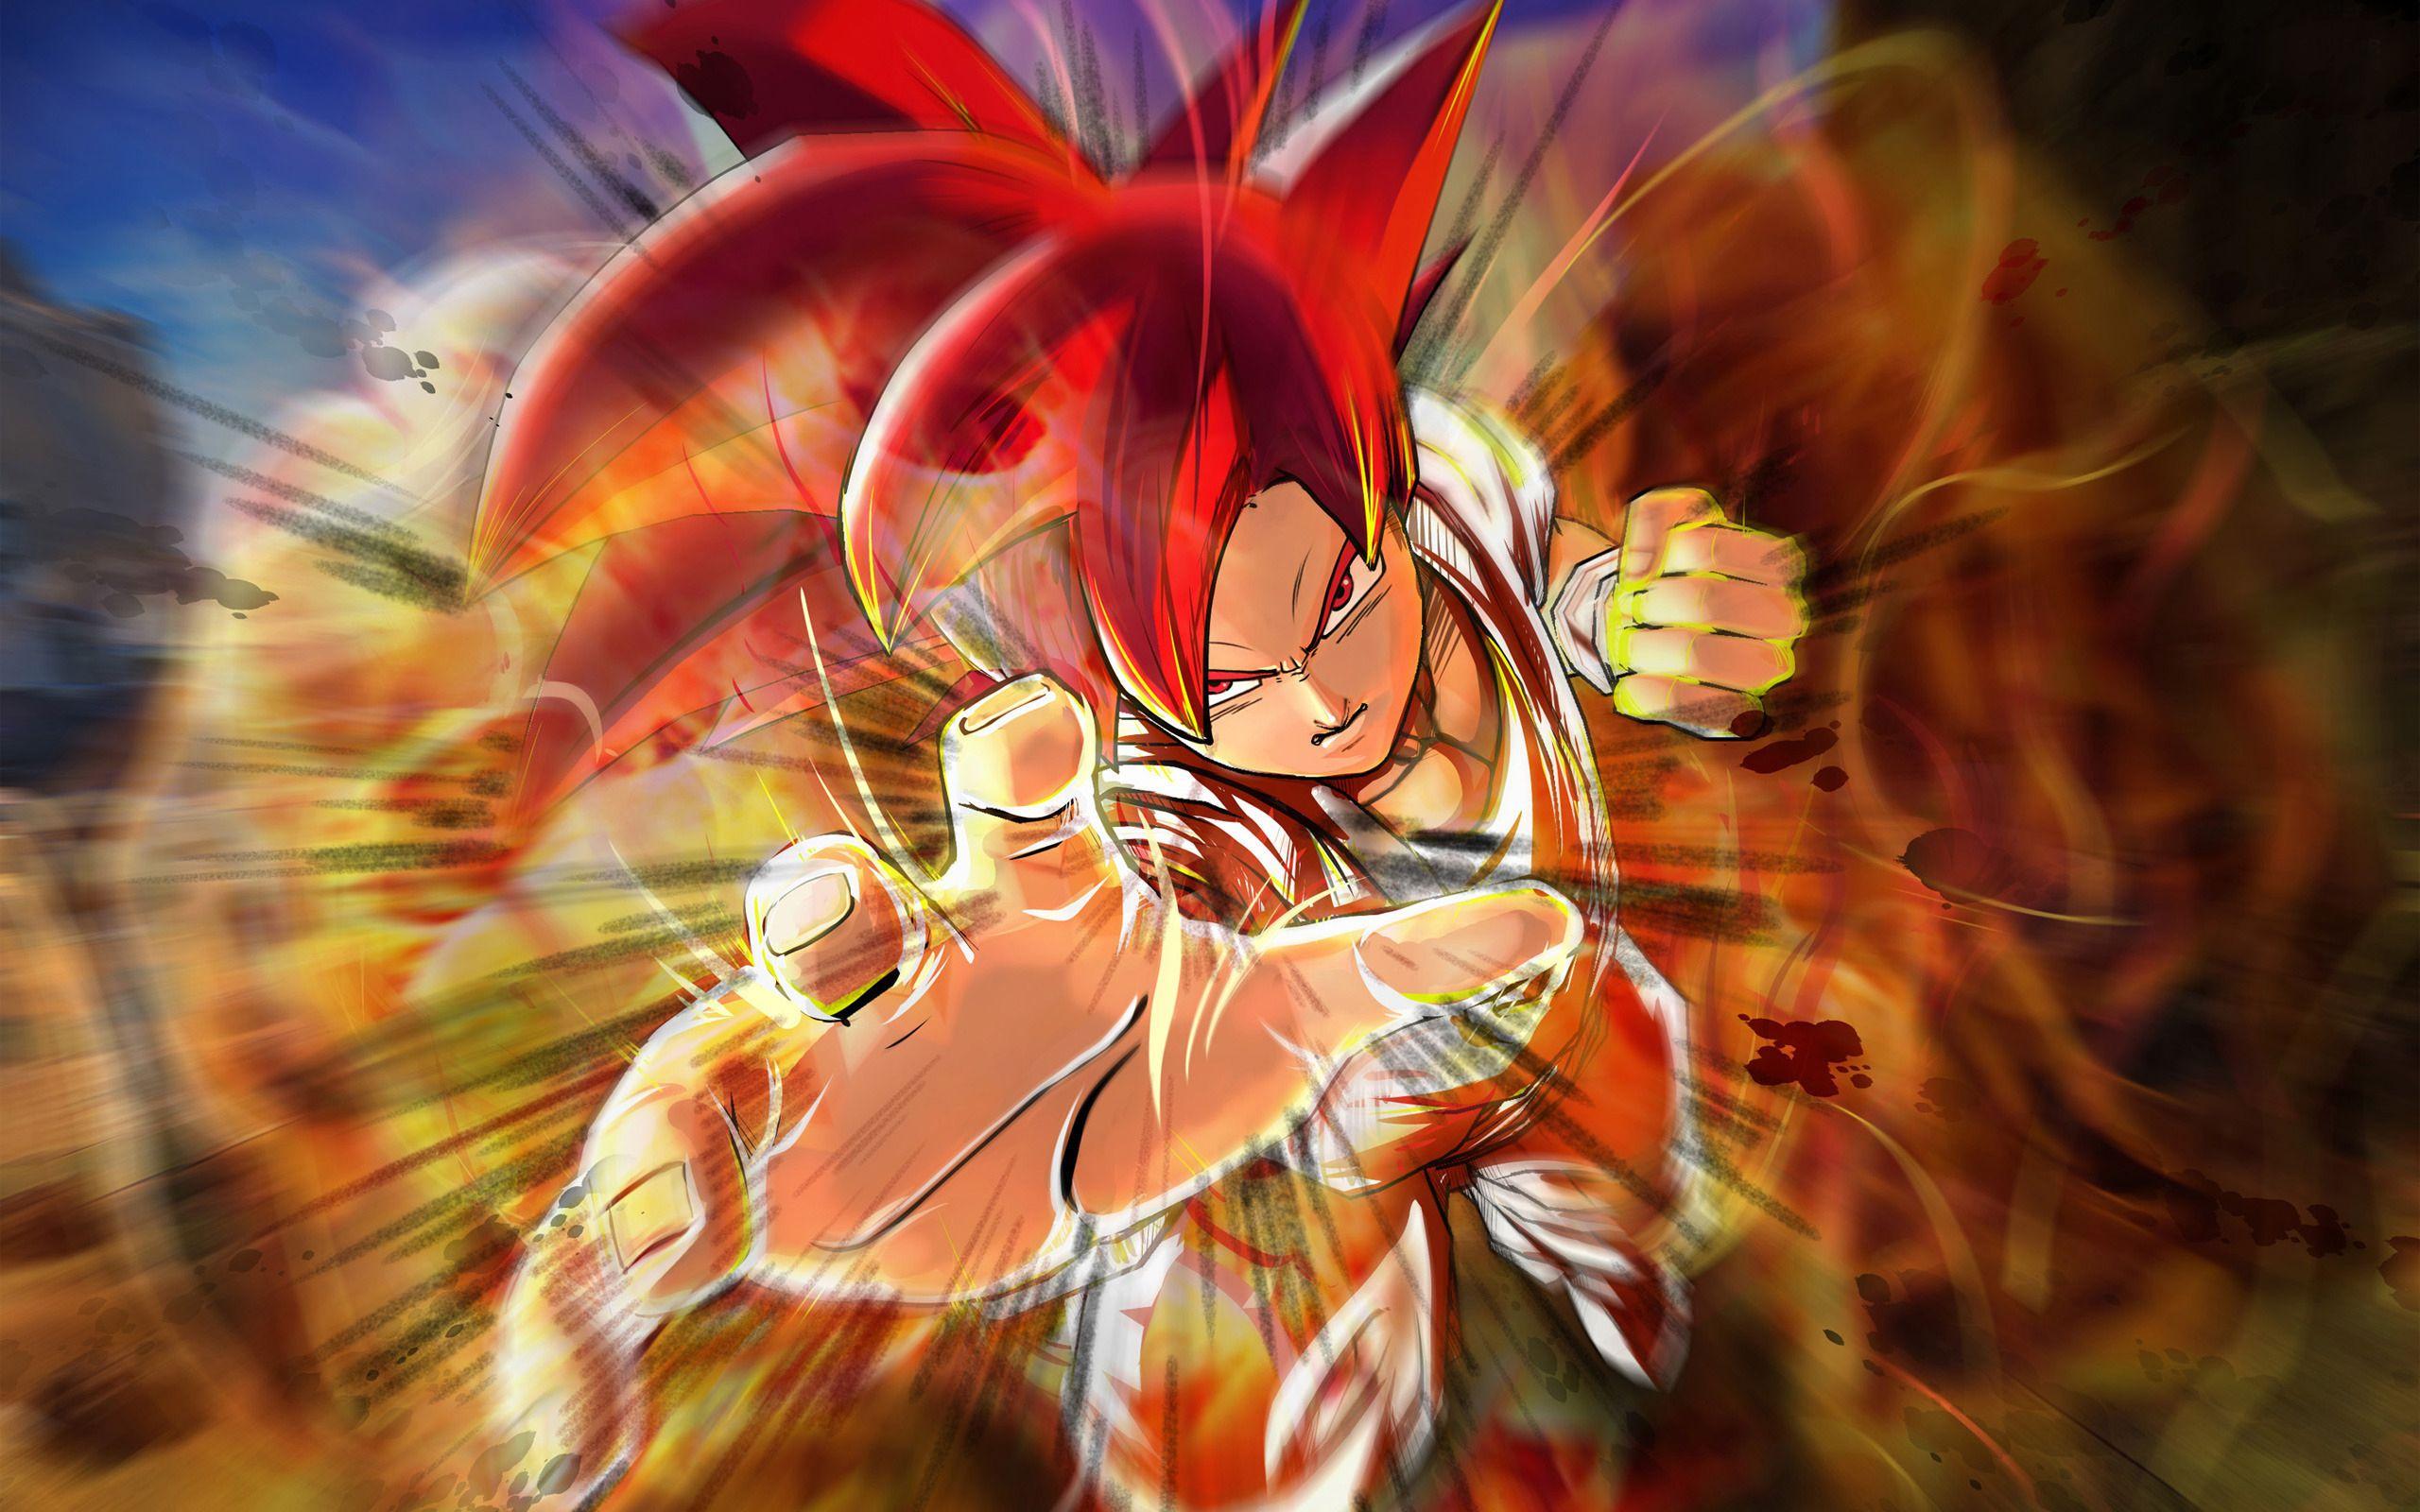 Cartoon Wallpaper: Goku Super Saiyan God Wallpapers 1080p with